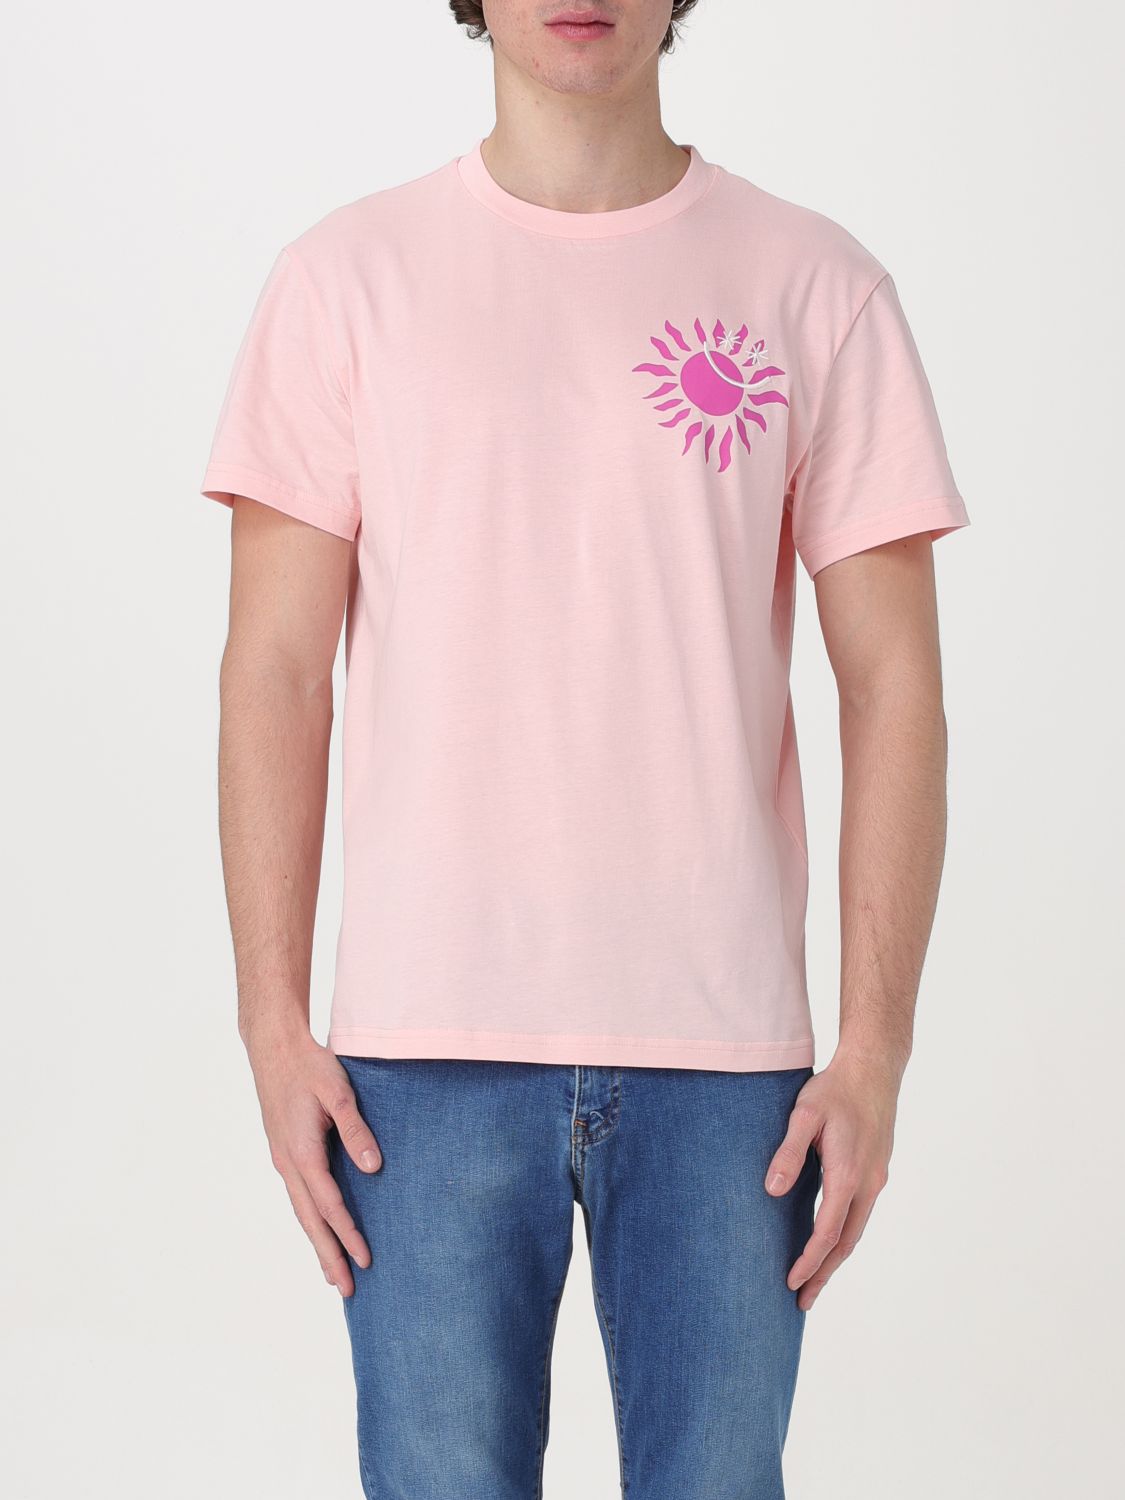 Manuel Ritz T-shirt  Men Color Pink